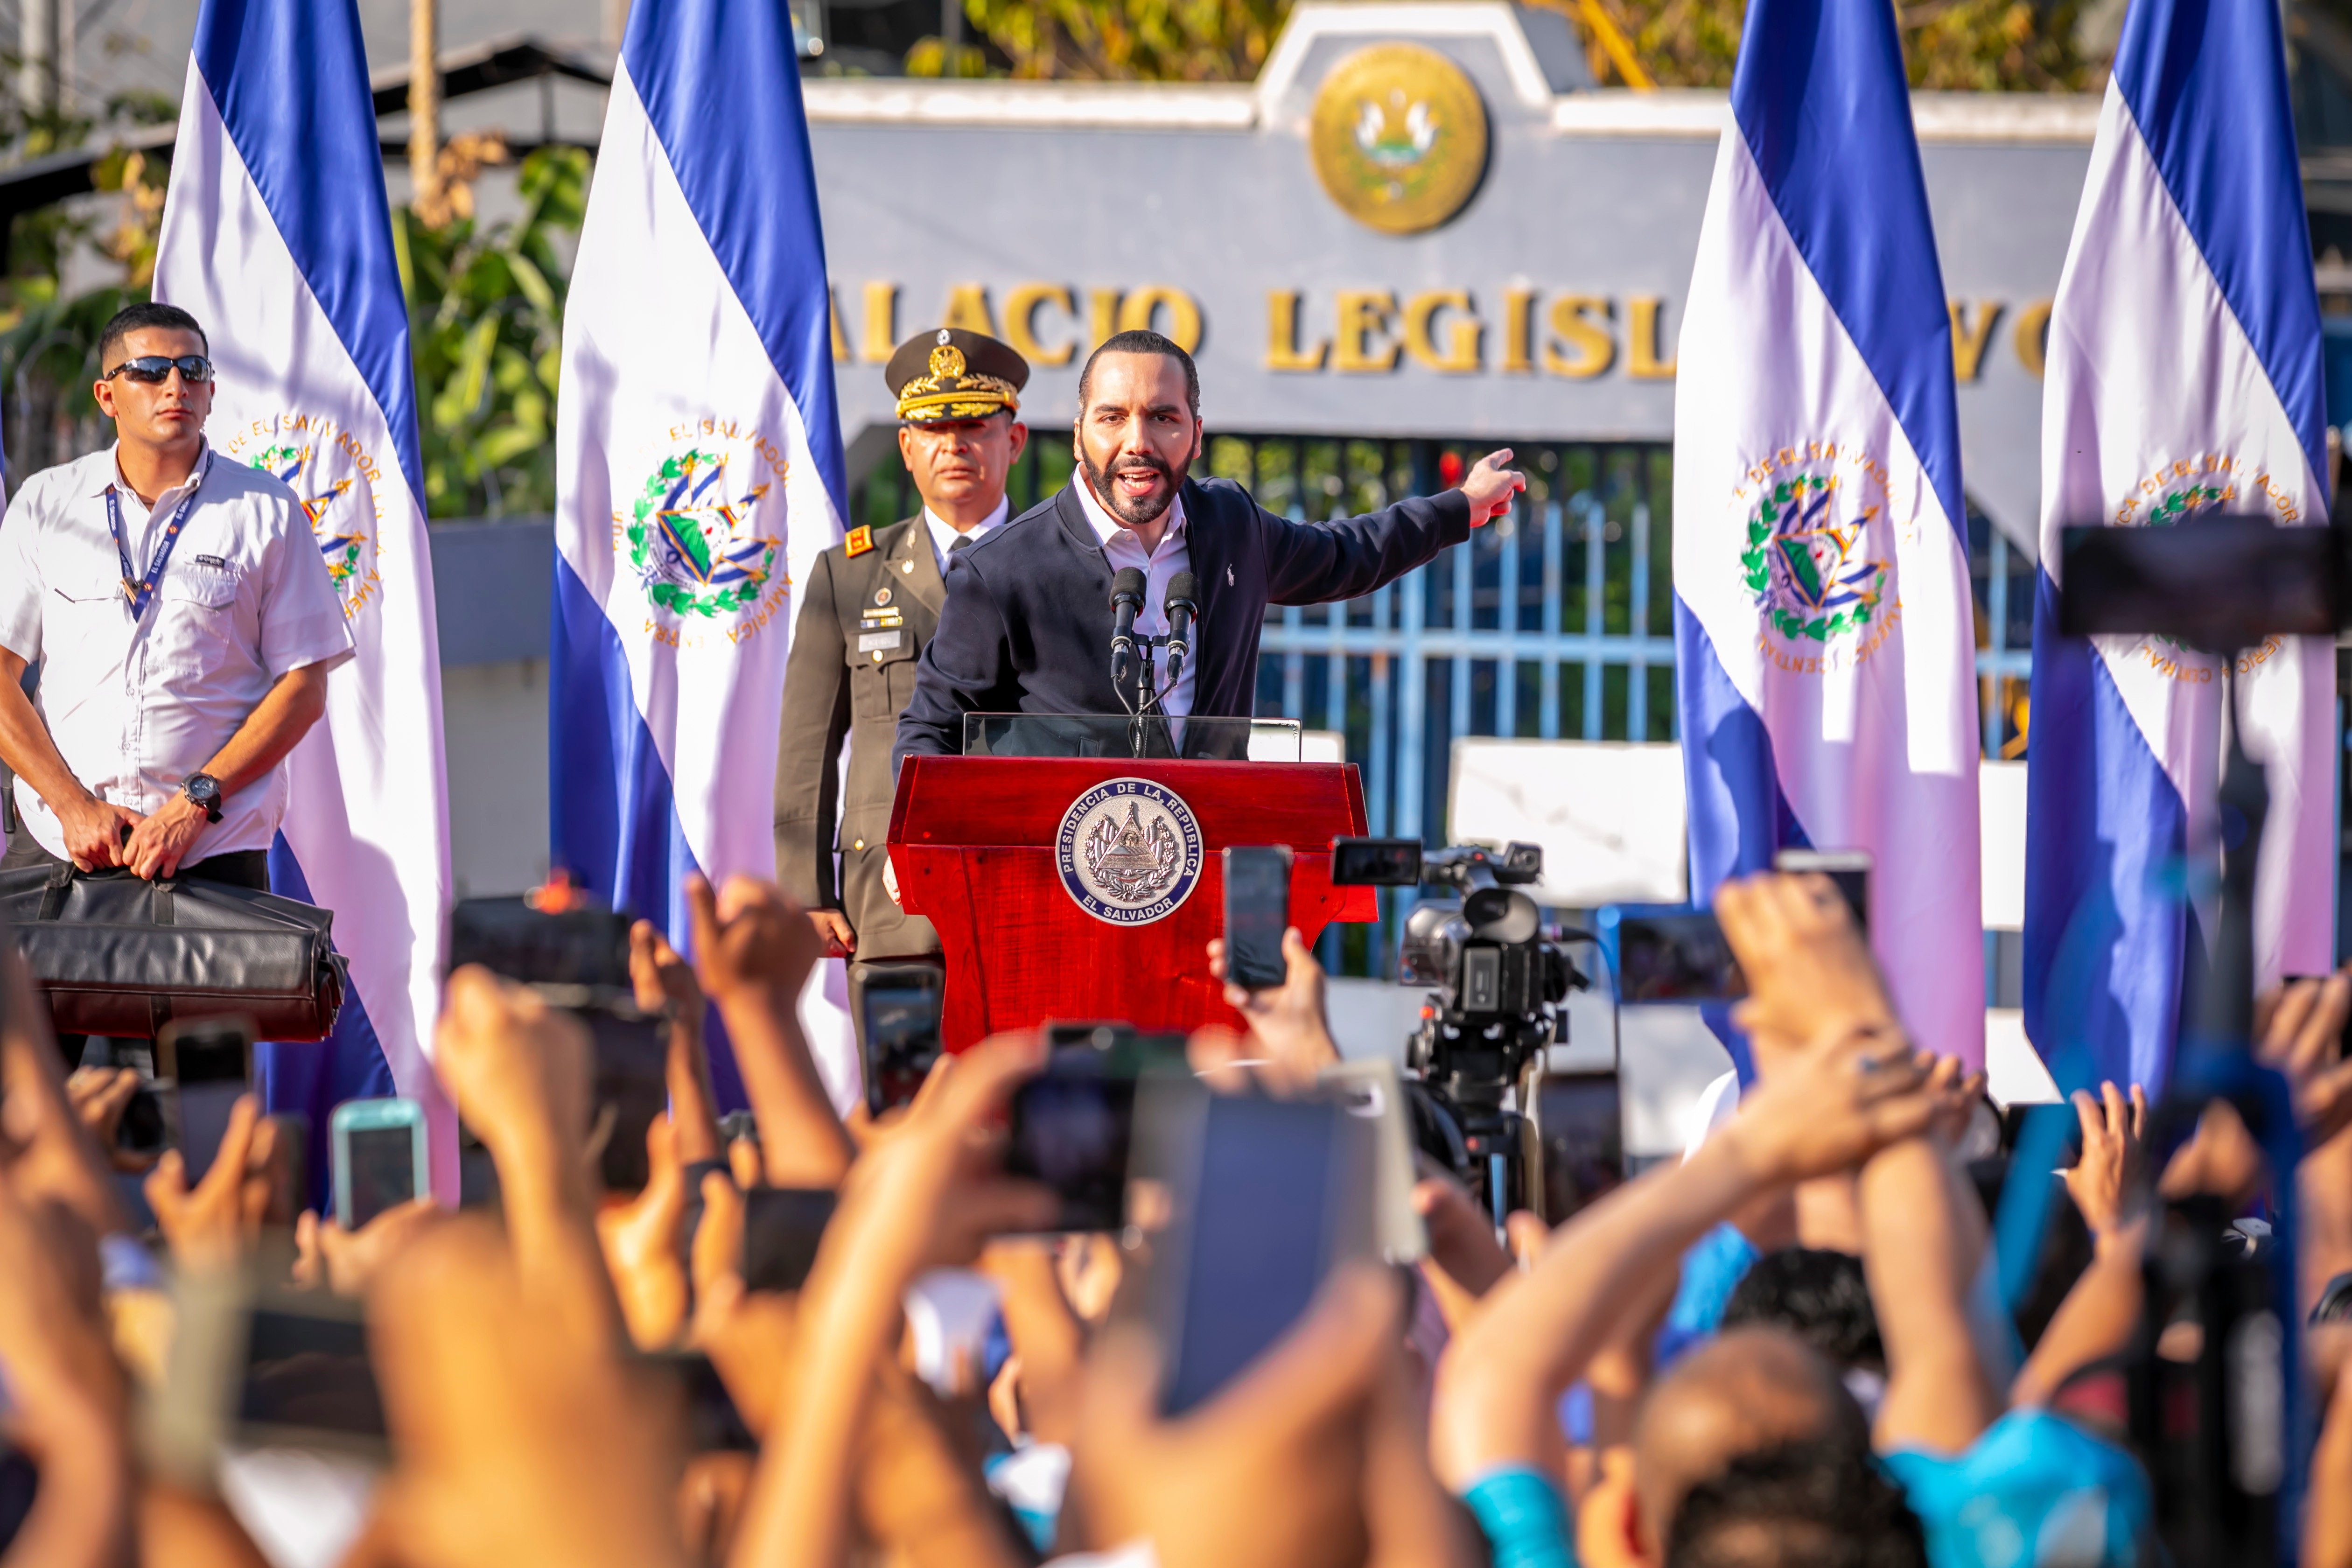 En febrero de 2020 Nayib Bukele entró acompañado del ejército a la Asamblea Legislativa de El Salvador, cuando aún no la controlaba. Fue uno de los primeros actos en su giro autoritario.
